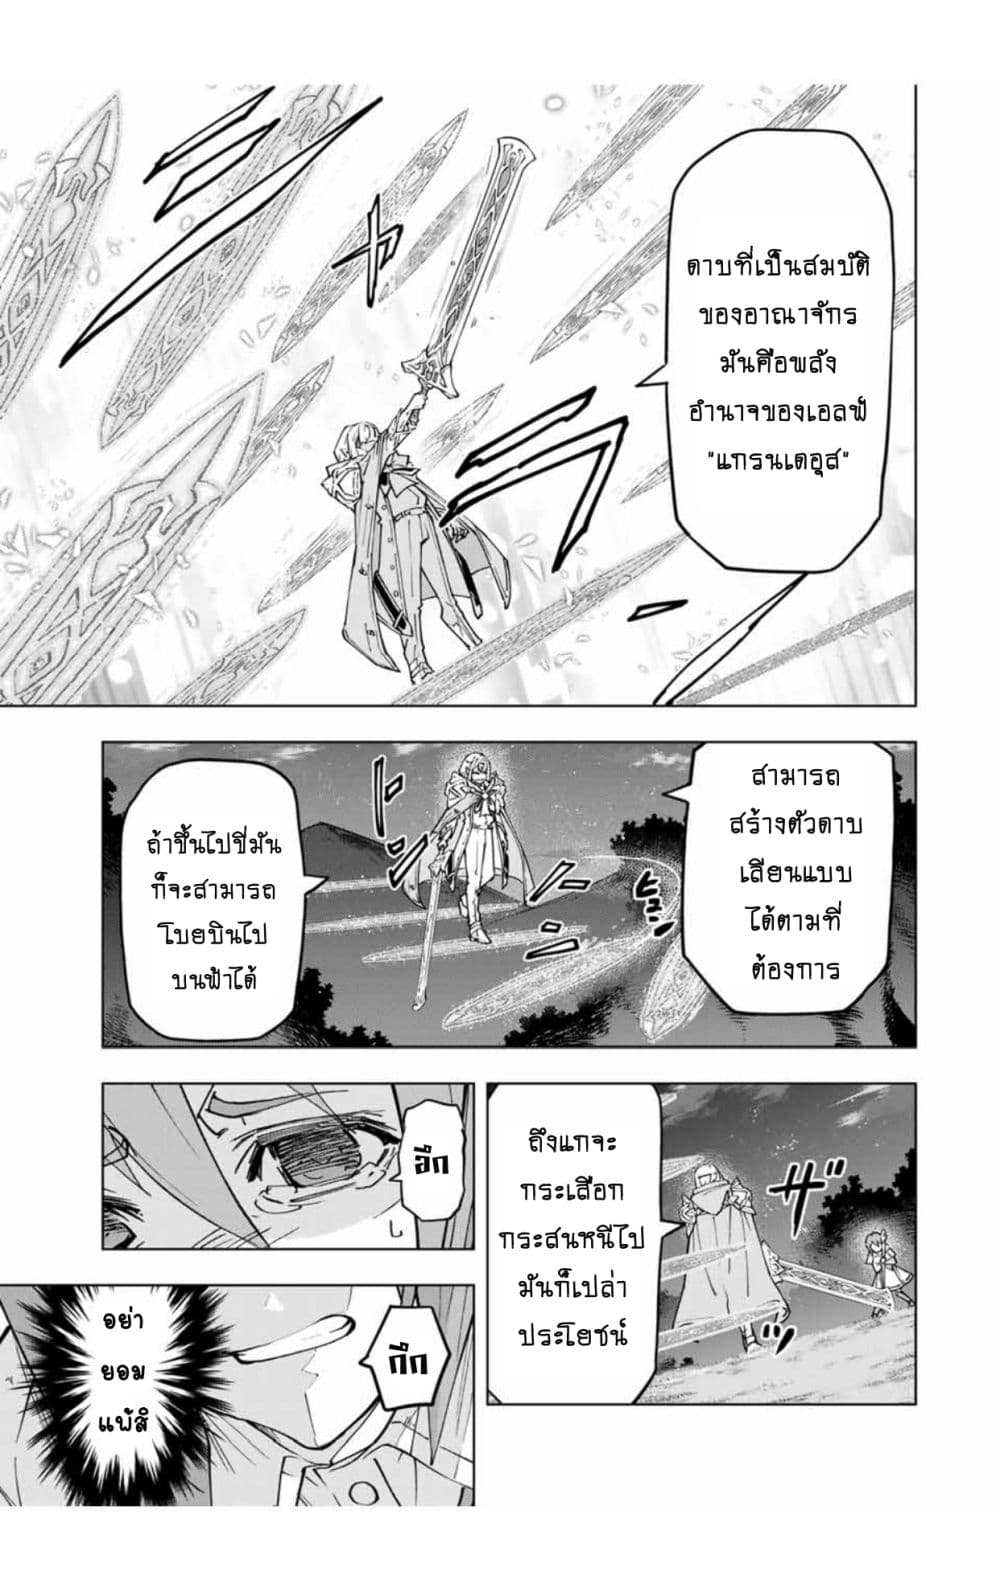 อ่านการ์ตูน Shinjiteita Nakama Tachi Ni Dungeon Okuchi De Korosare Kaketa ga Gift 『Mugen Gacha』 De Level 9999 No Nakama Tachi Wo Te Ni Irete Moto Party Member To Sekai Ni Fukushu & 『Zama A!』 Shimasu! 19 ภาพที่ 8